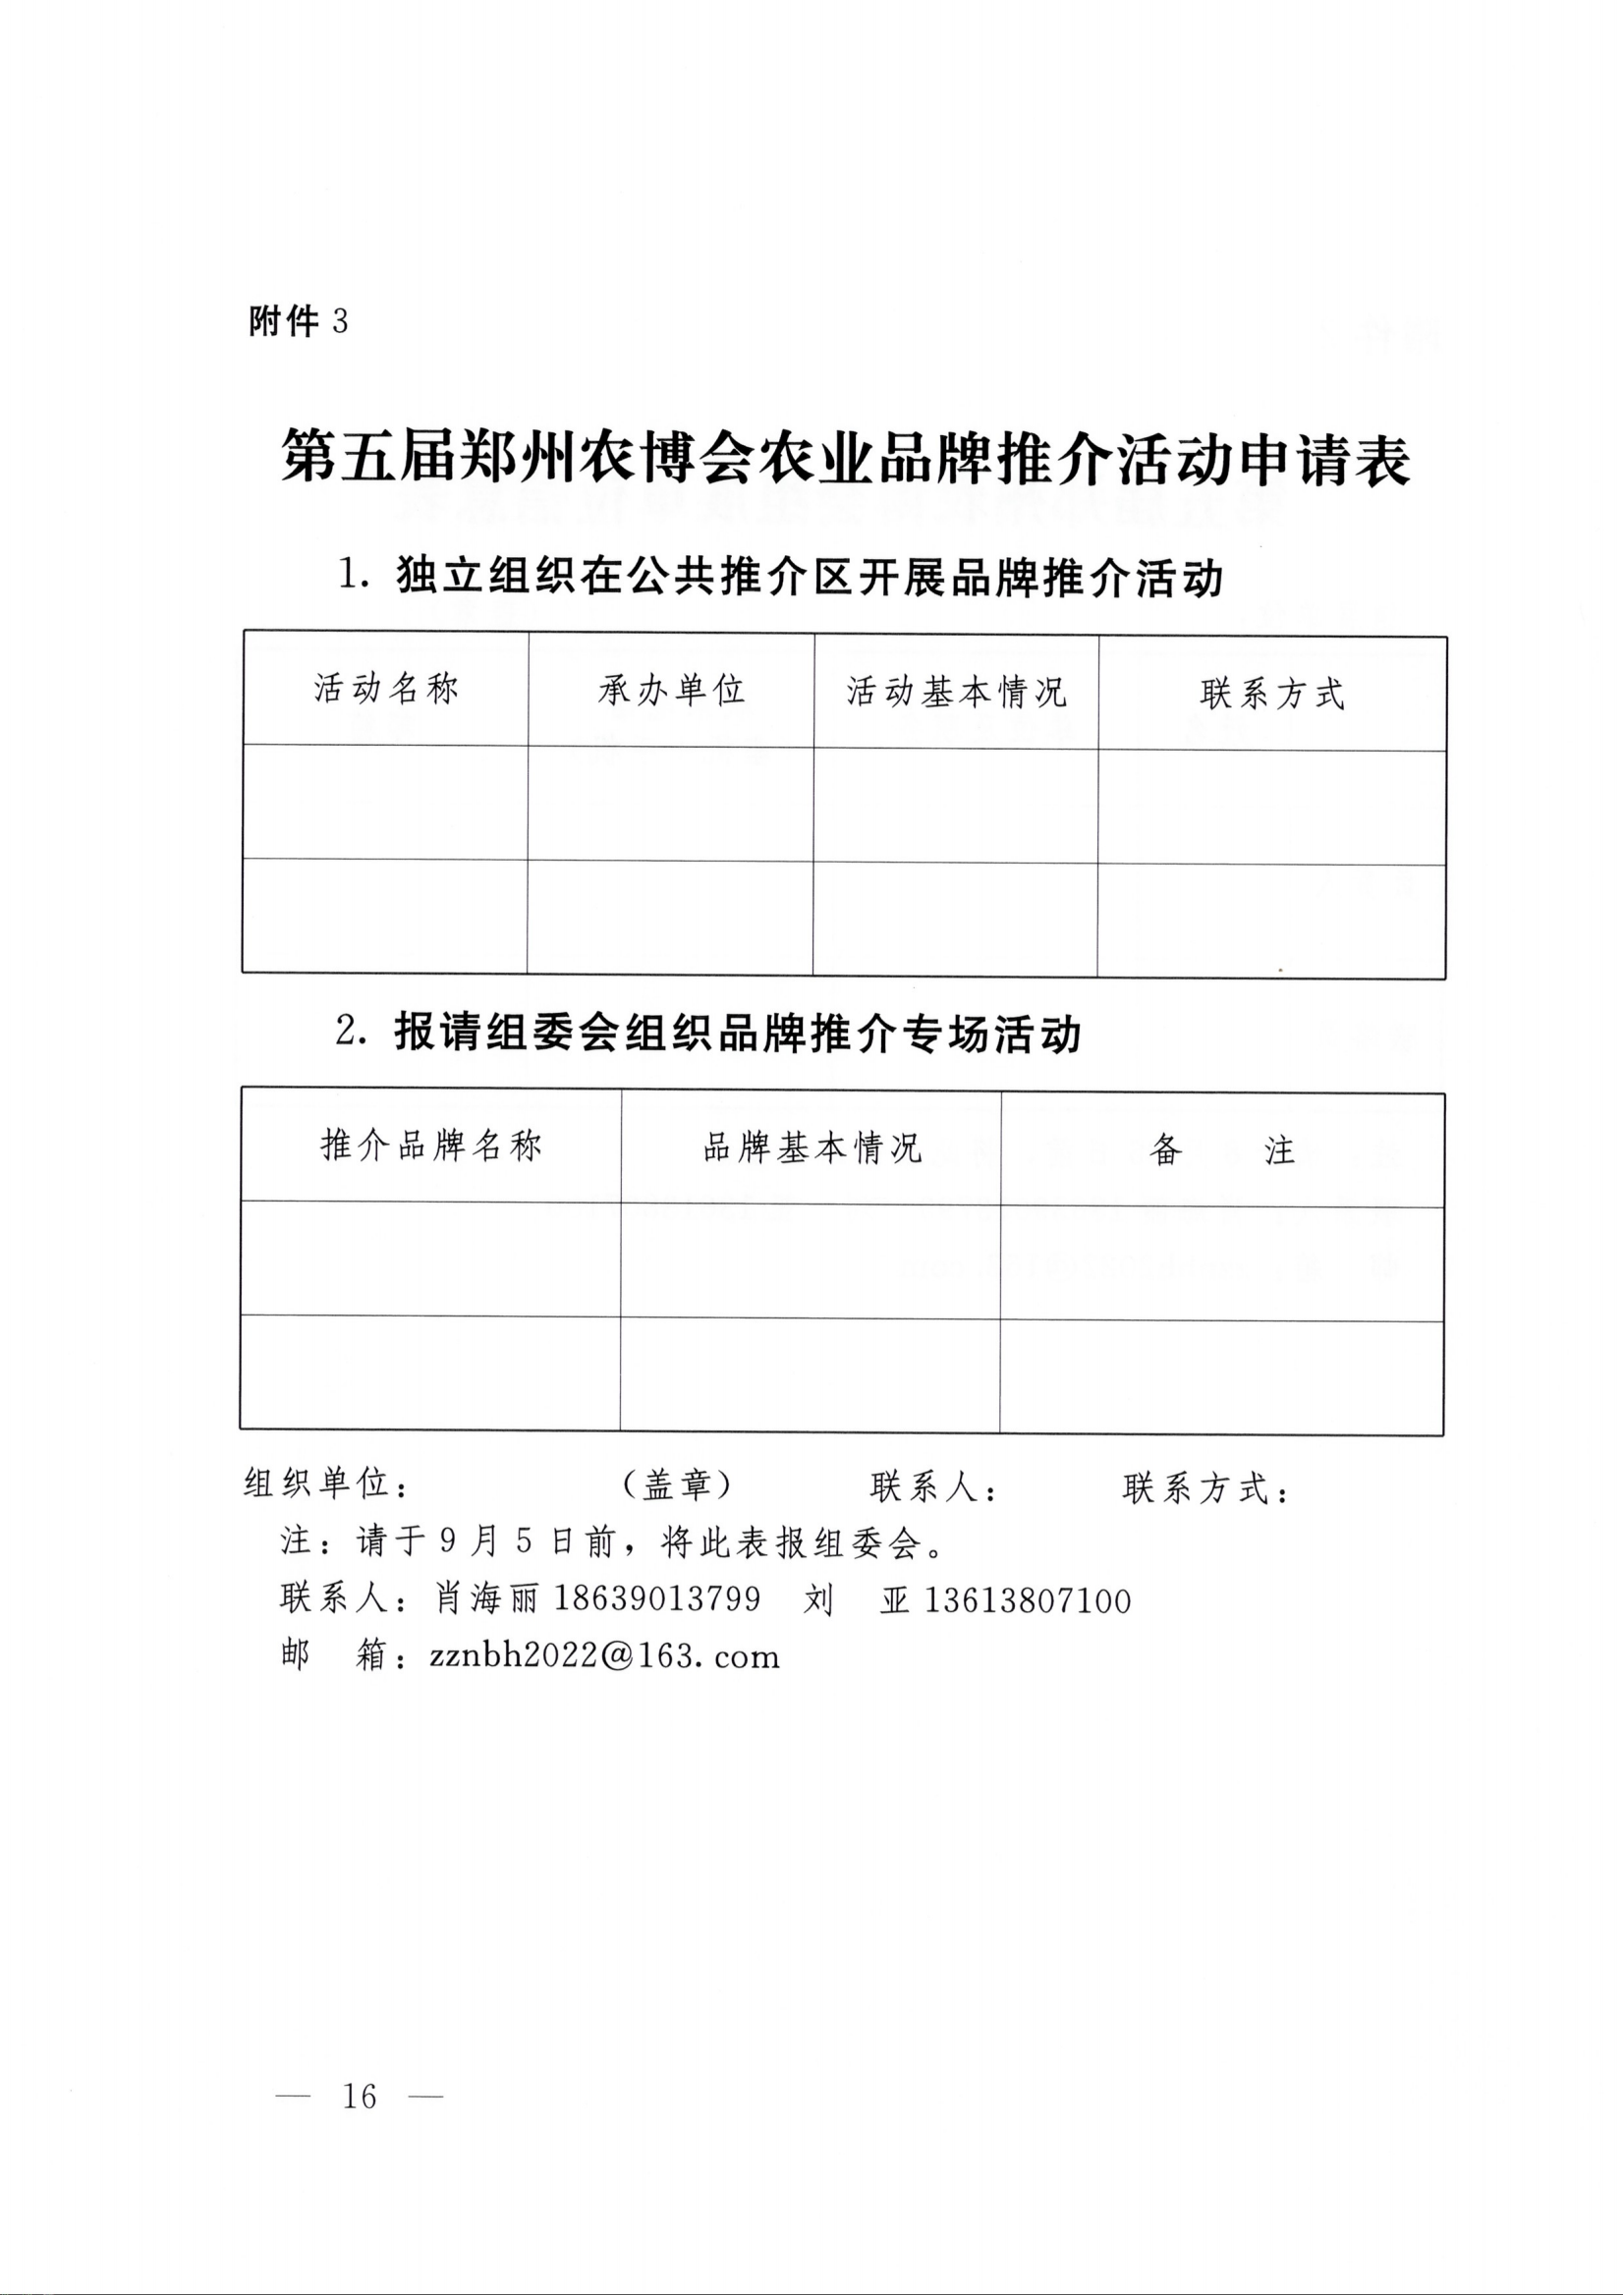 第五届郑州农博会农业品牌推介活动申请表